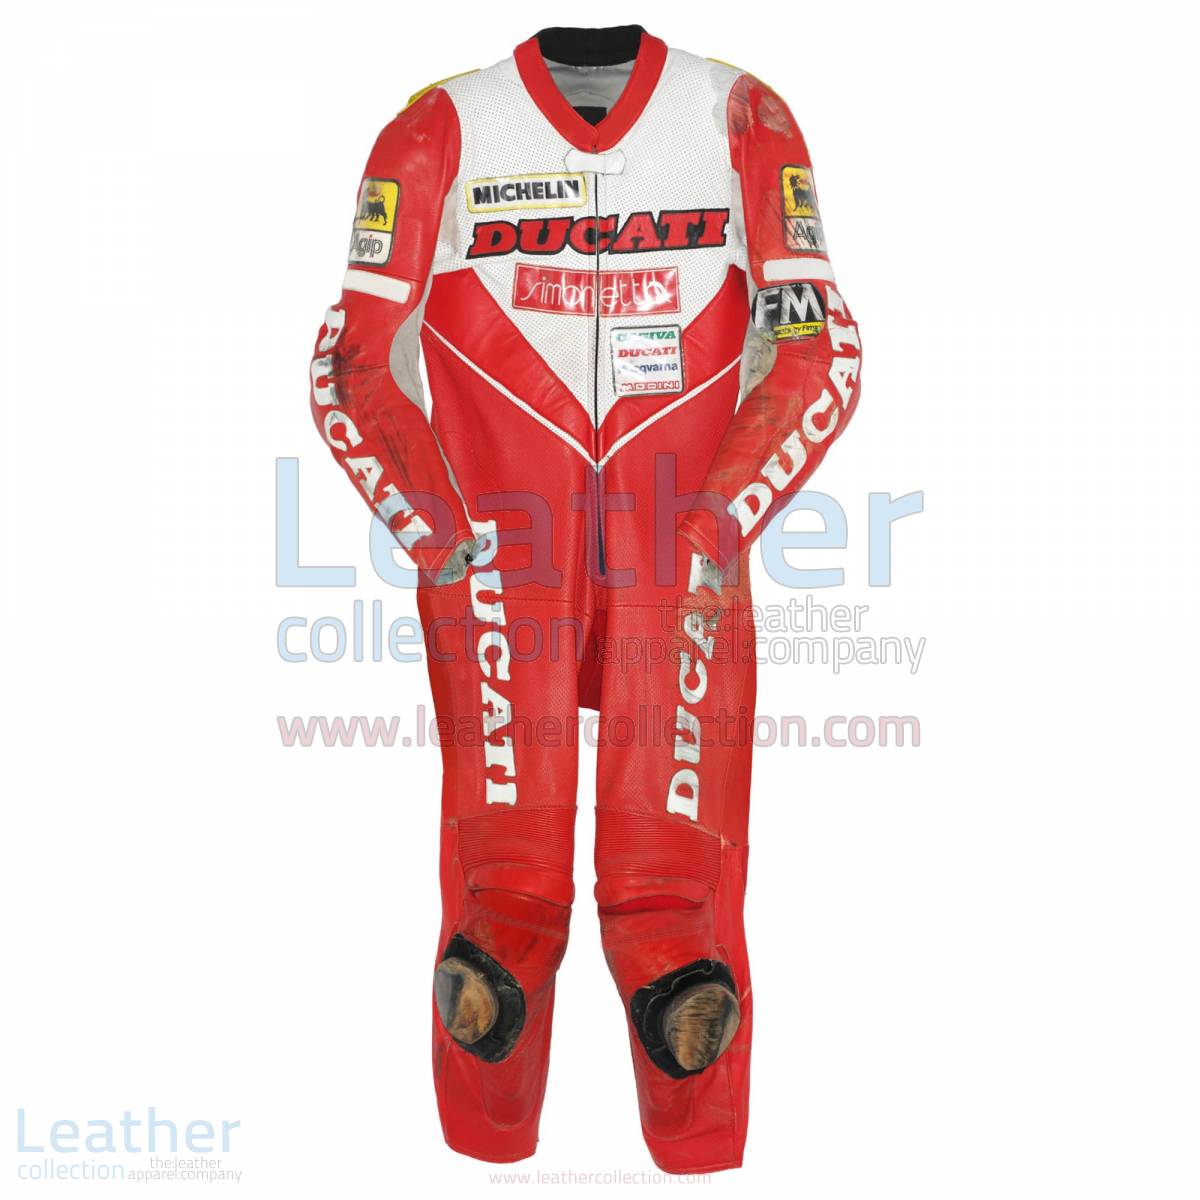 Giancarlo Falappa Ducati WSBK 1993 Leathers